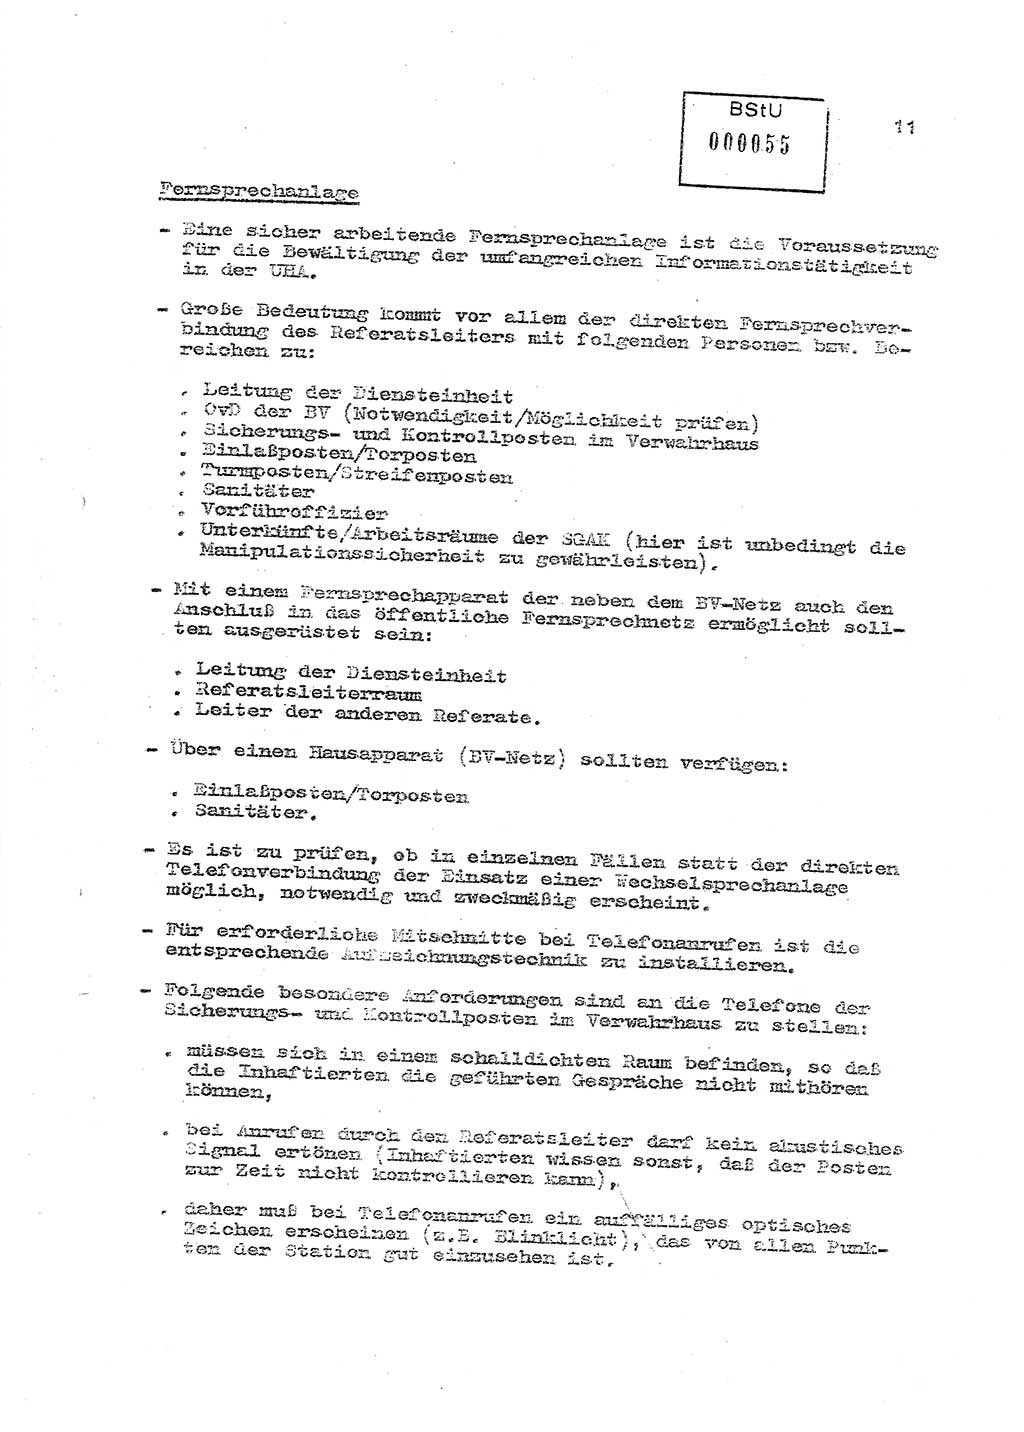 Sicherungs- und Nachrichtentechnik in UHA [Untersuchungshaftanstalten, Ministerium für Staatssicherheit, Deutsche Demokratische Republik (DDR)], Abteilung (Abt.) ⅩⅣ, Berlin 1980, Seite 11 (Si.-NT UHA MfS DDR Abt. ⅩⅣ /80 1980, S. 11)